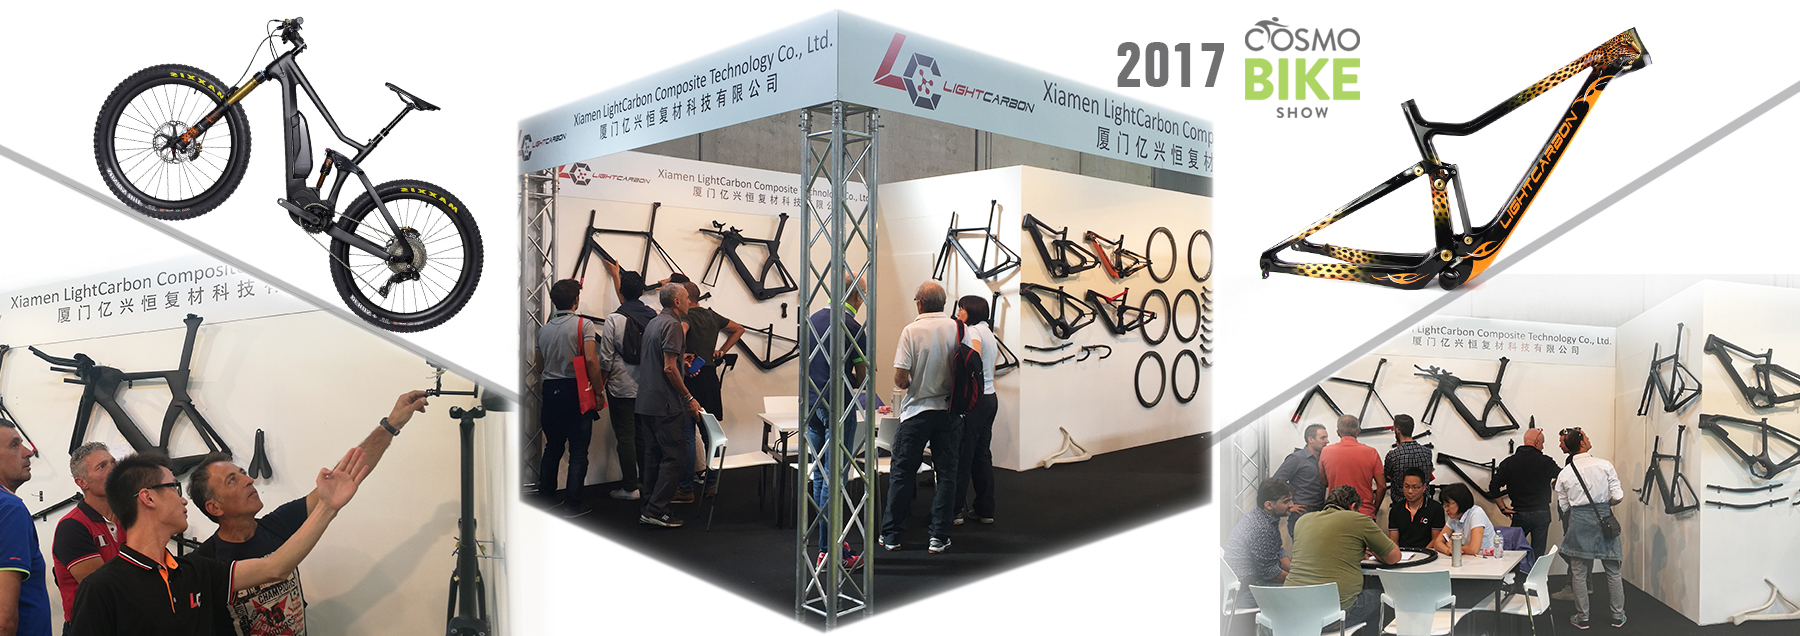 2017 lightcarbon cosmo fietsshow